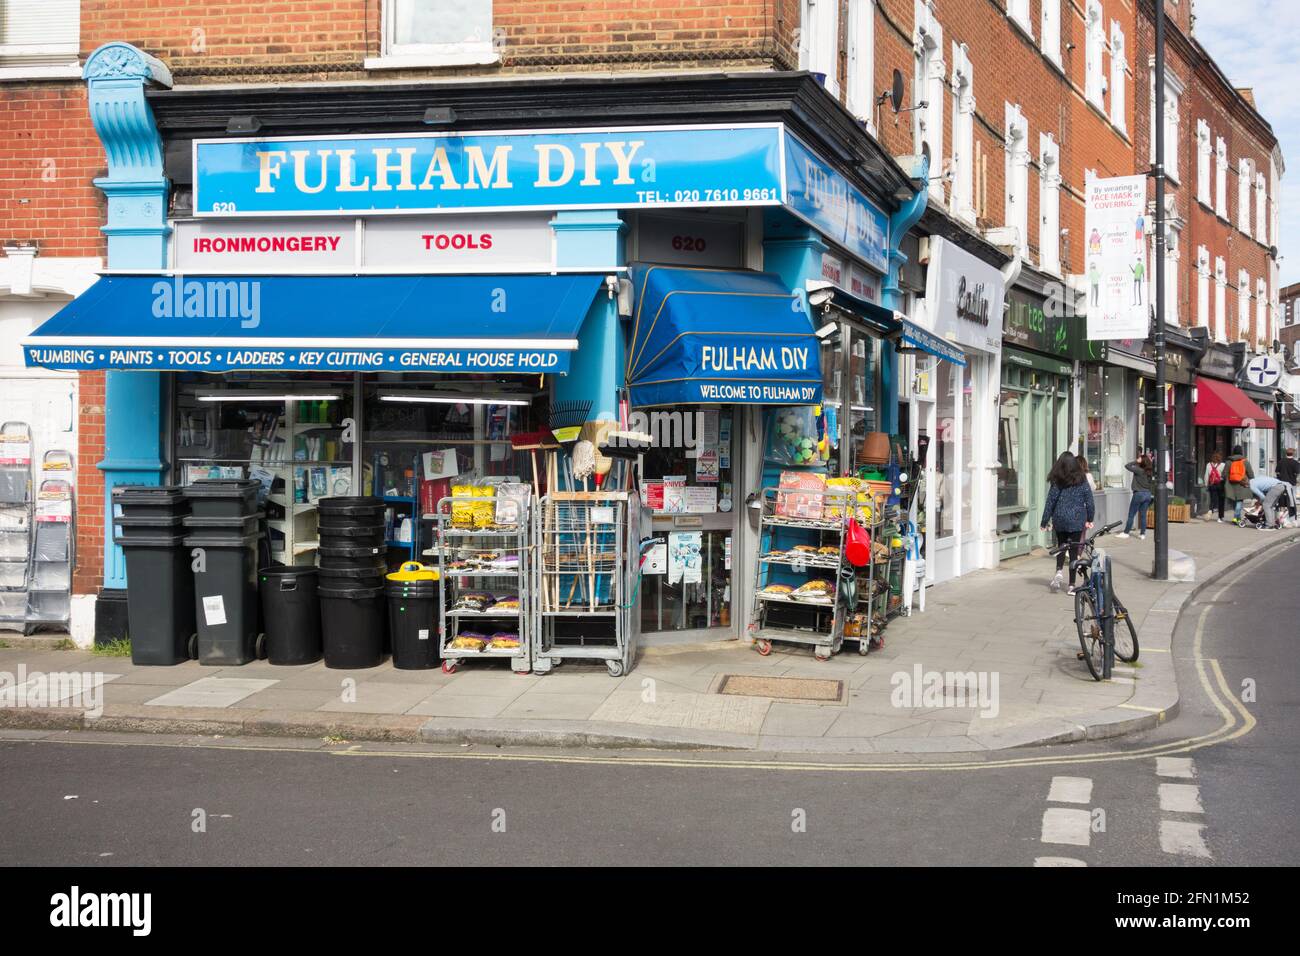 Fulham DIY Corner Shop on Fulham Road, Fulham, London, England, UK Stock Photo